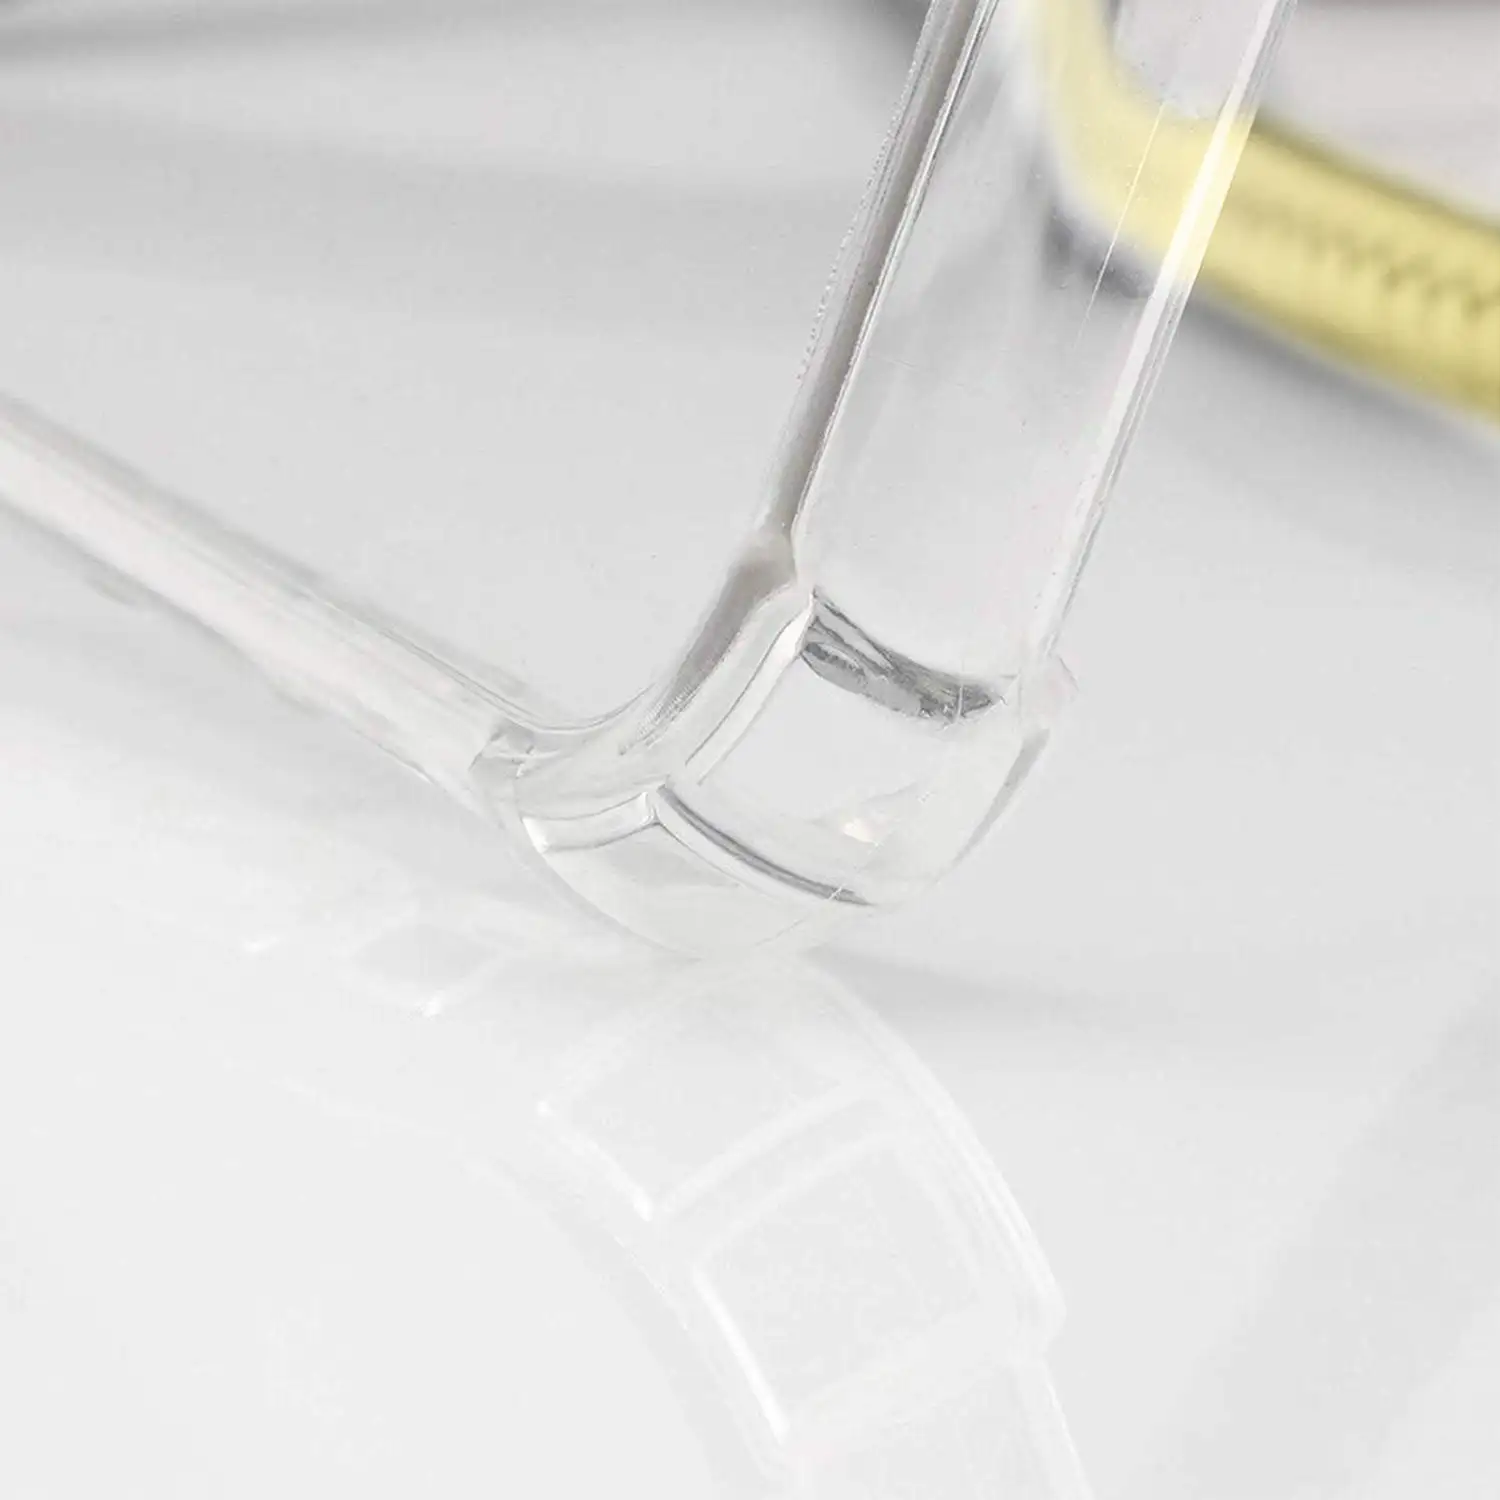 Carcasa transparente iPhone 11 con colgante de nylon. Accesorio de moda, ajuste perfecto y máxima protección